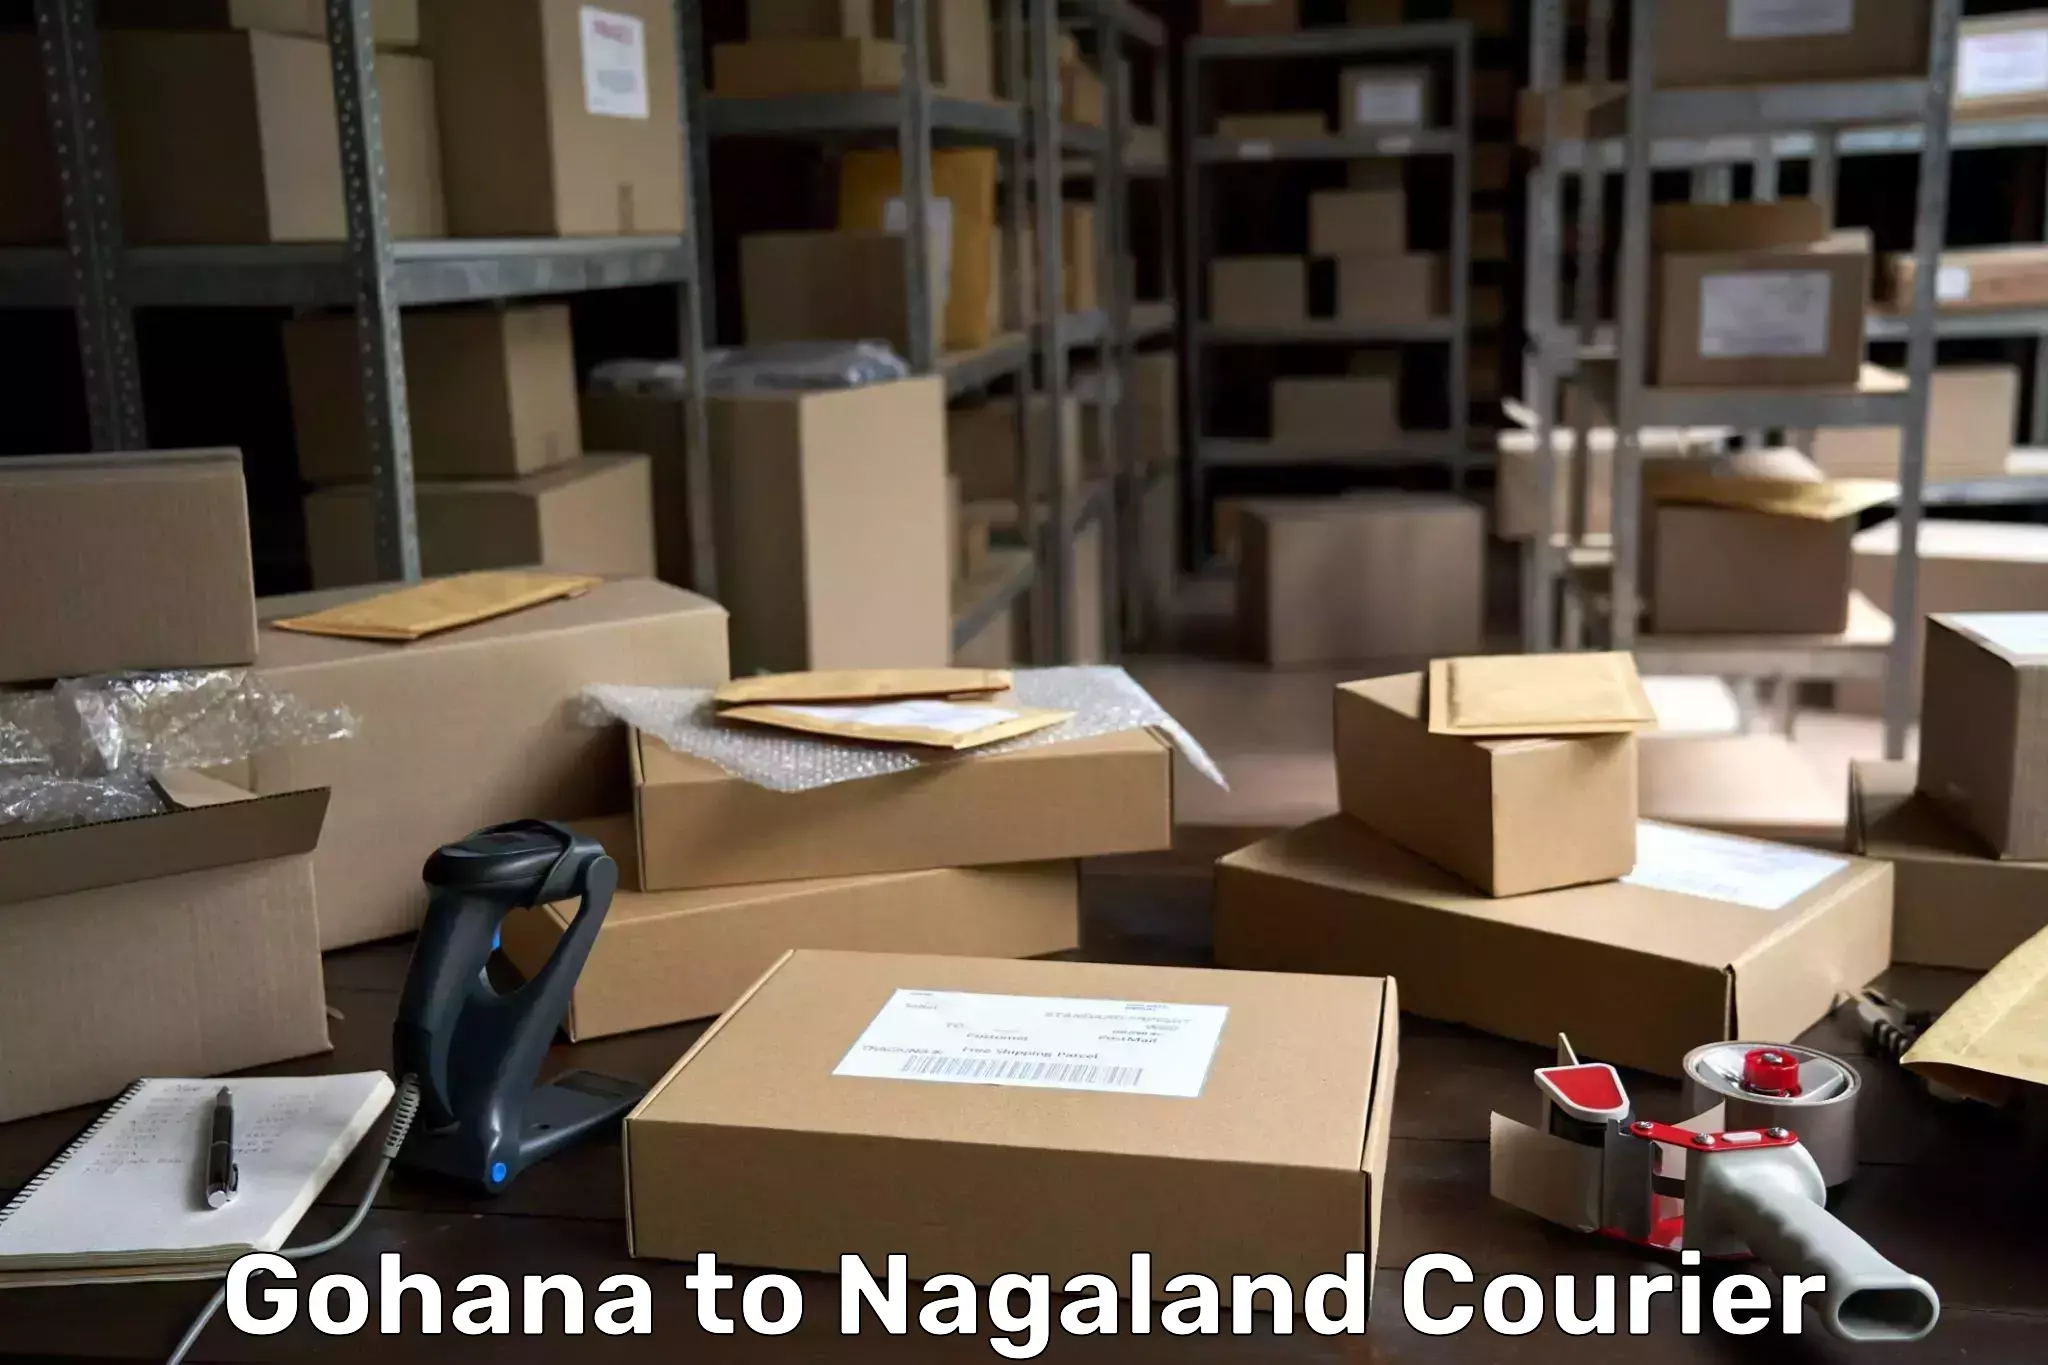 Digital courier platforms Gohana to Nagaland